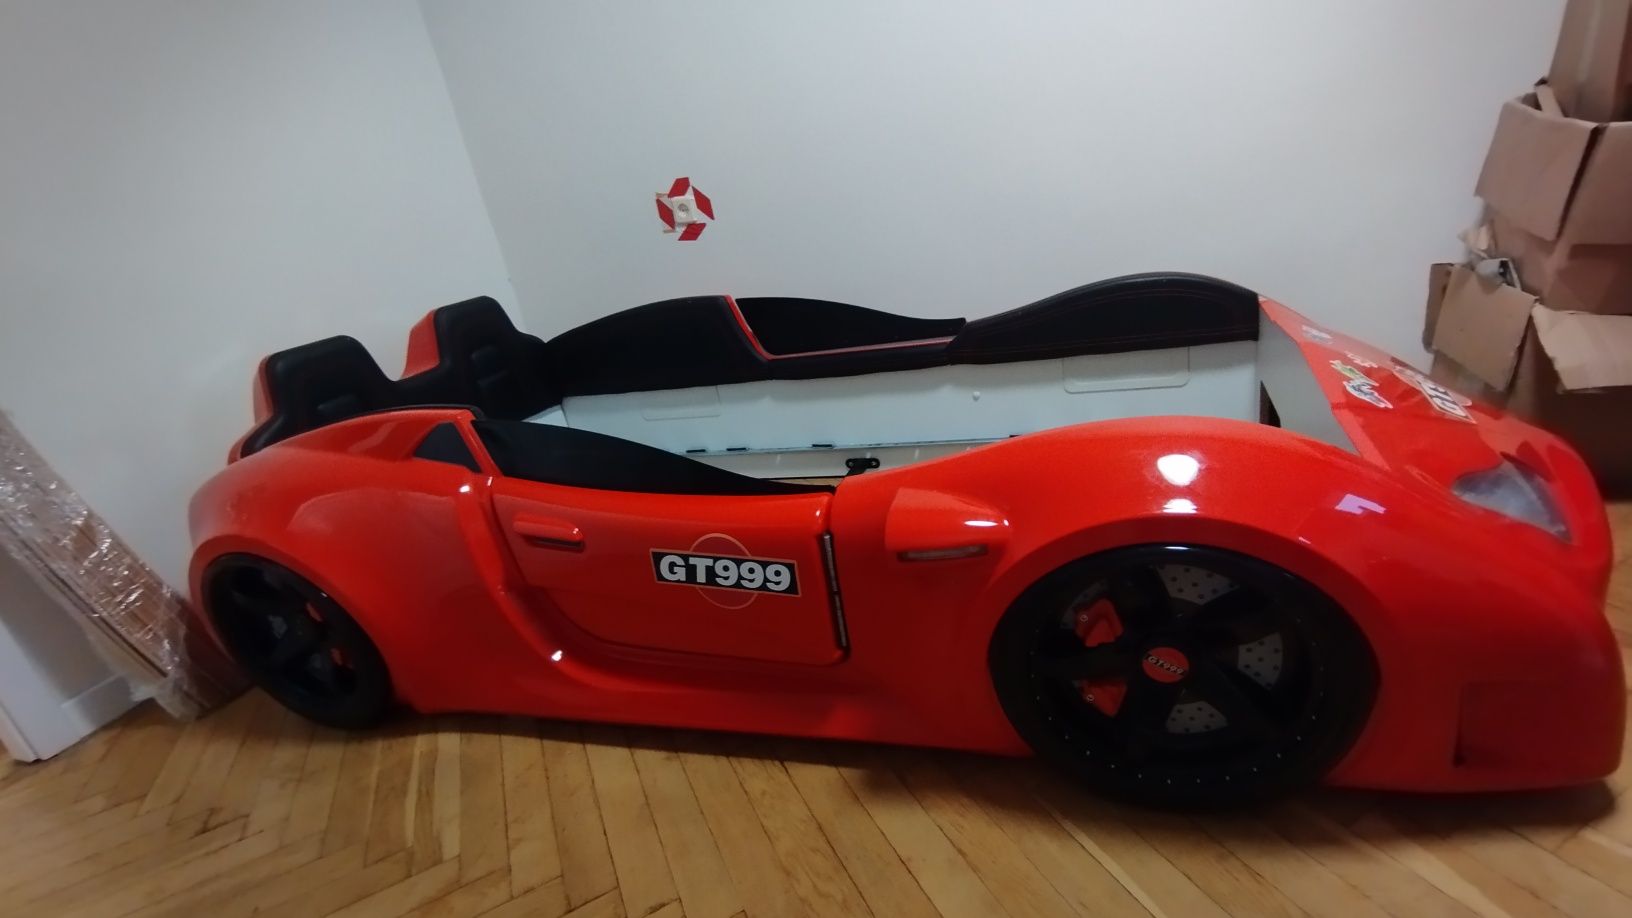 łóżko samochód GT999 otwierane drzwi, LED